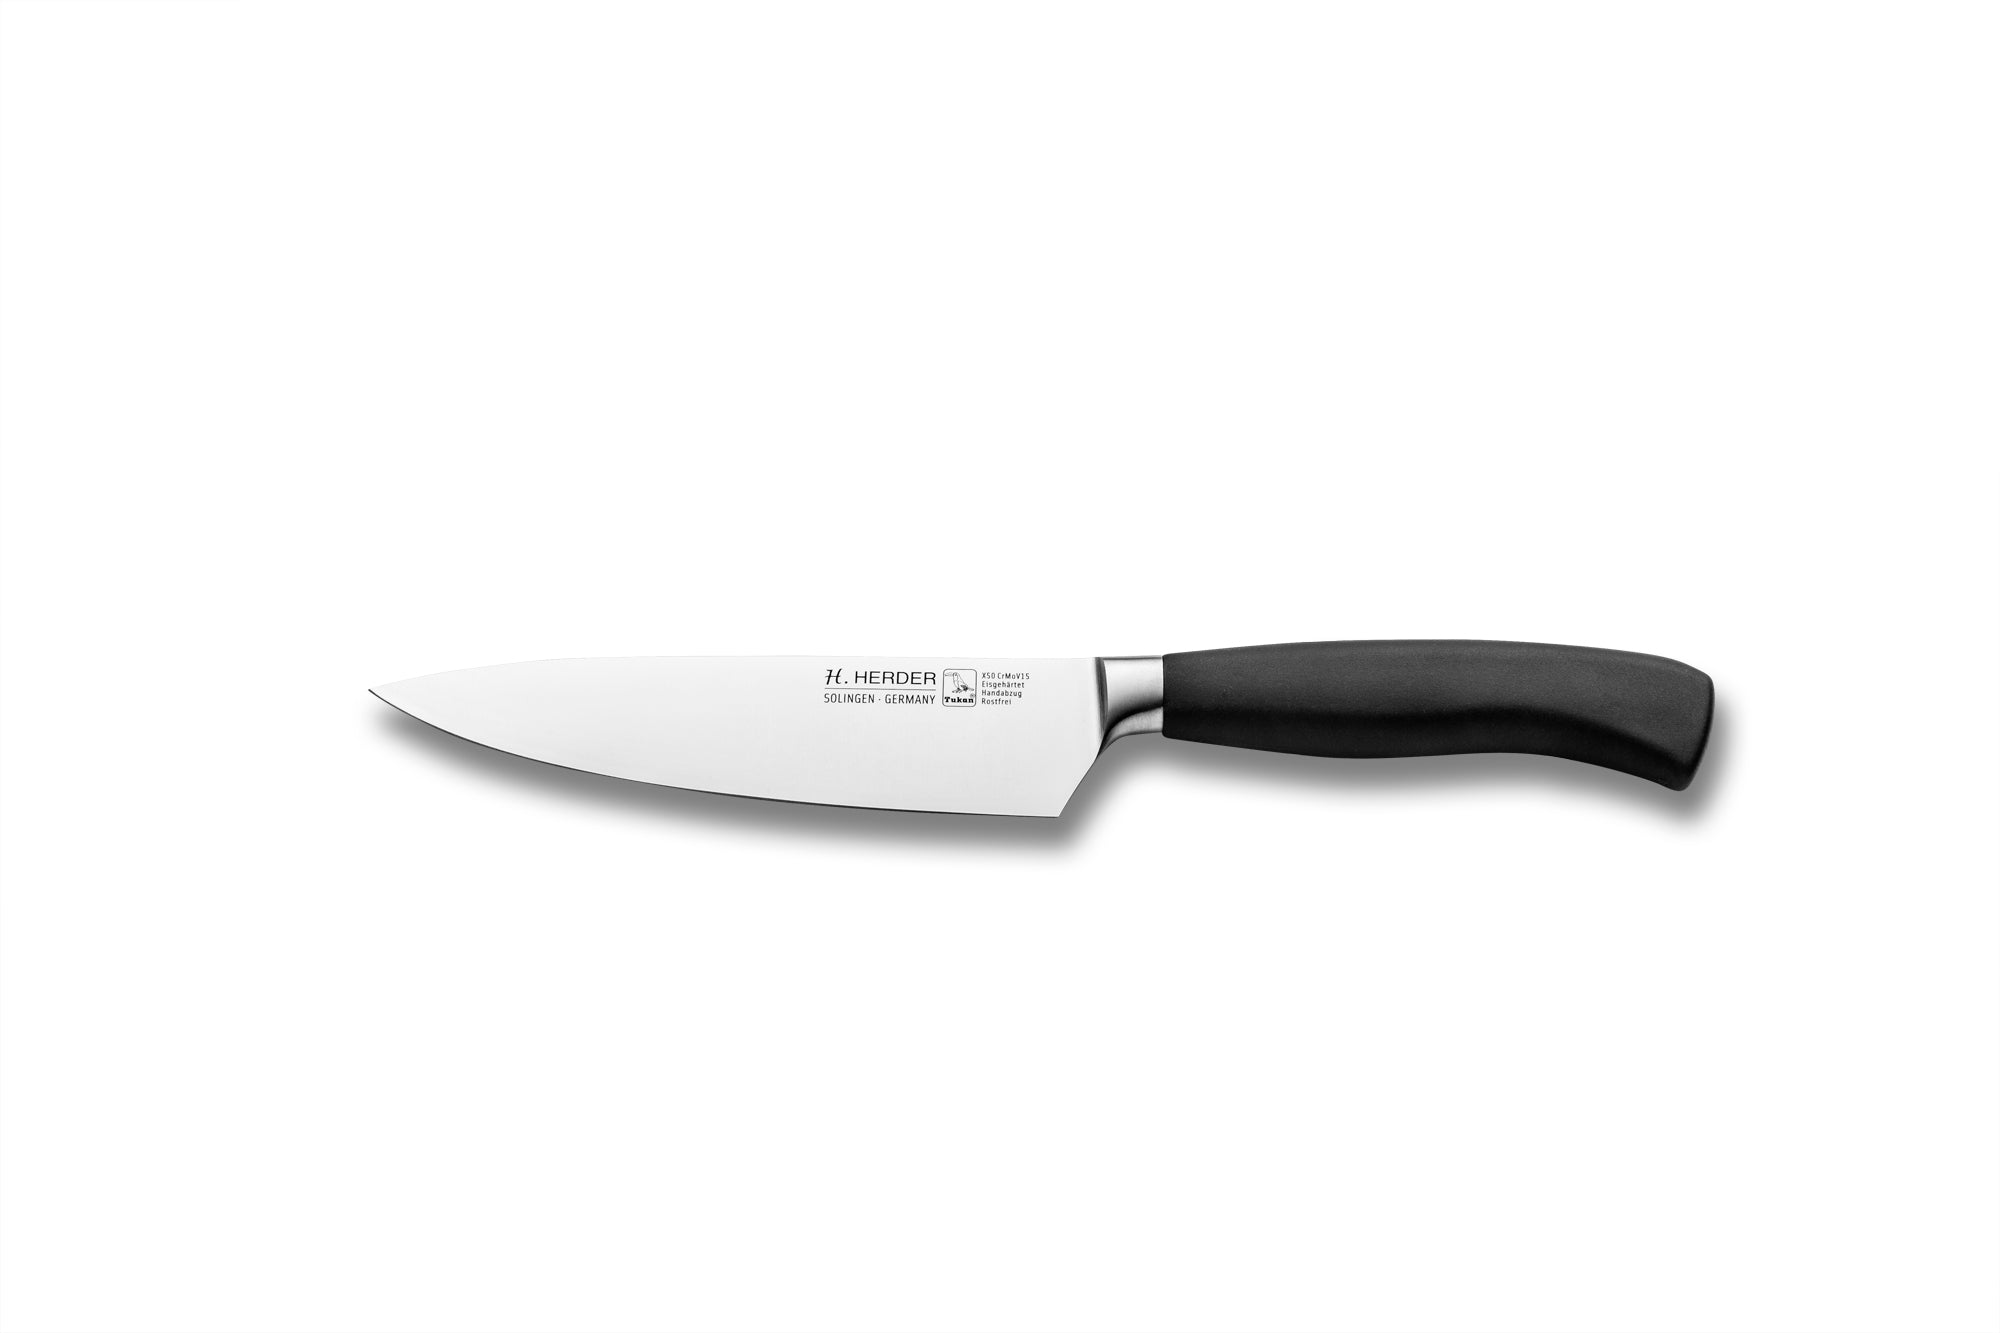 Cuchillo de cocinero Eterno Gastro, longitud de la hoja 16cm